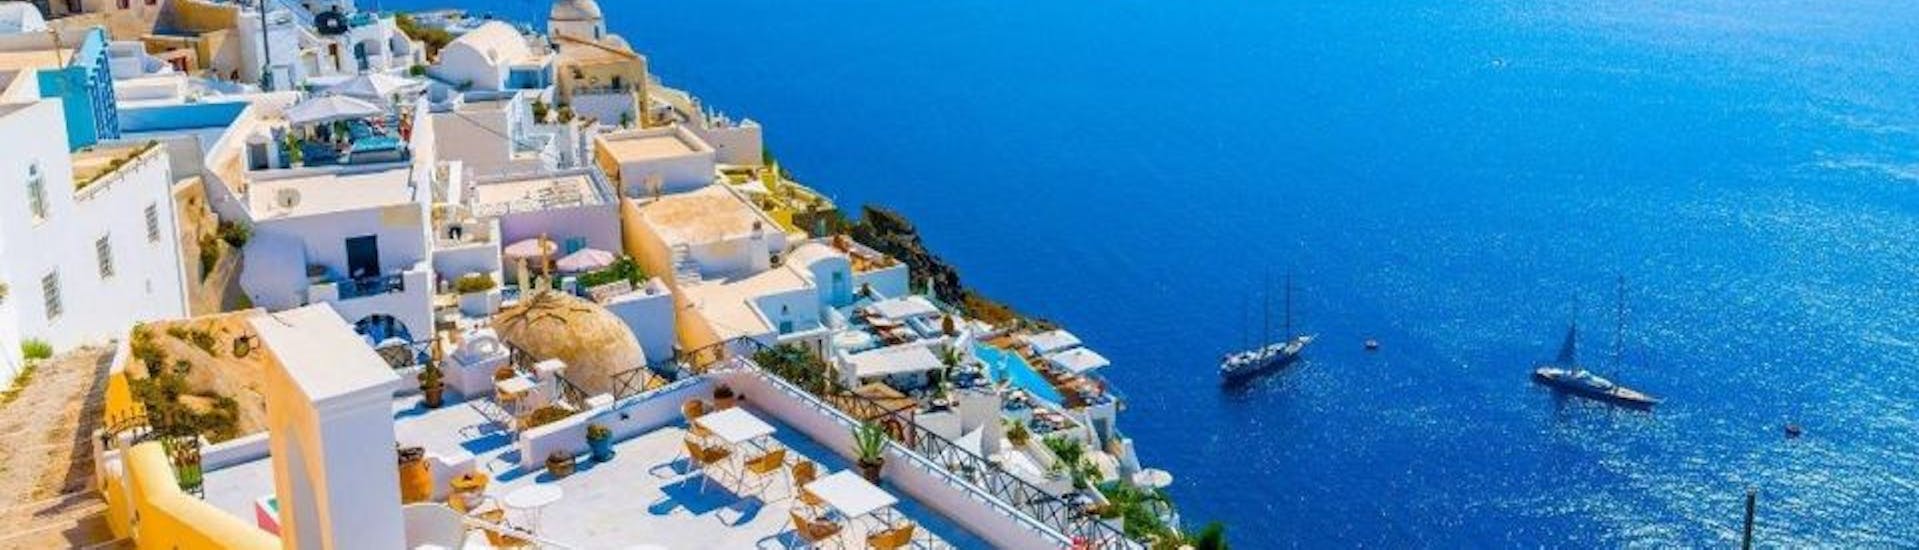 Catamarantocht naar Old Venetian Port of Rethymno met toeristische attracties.